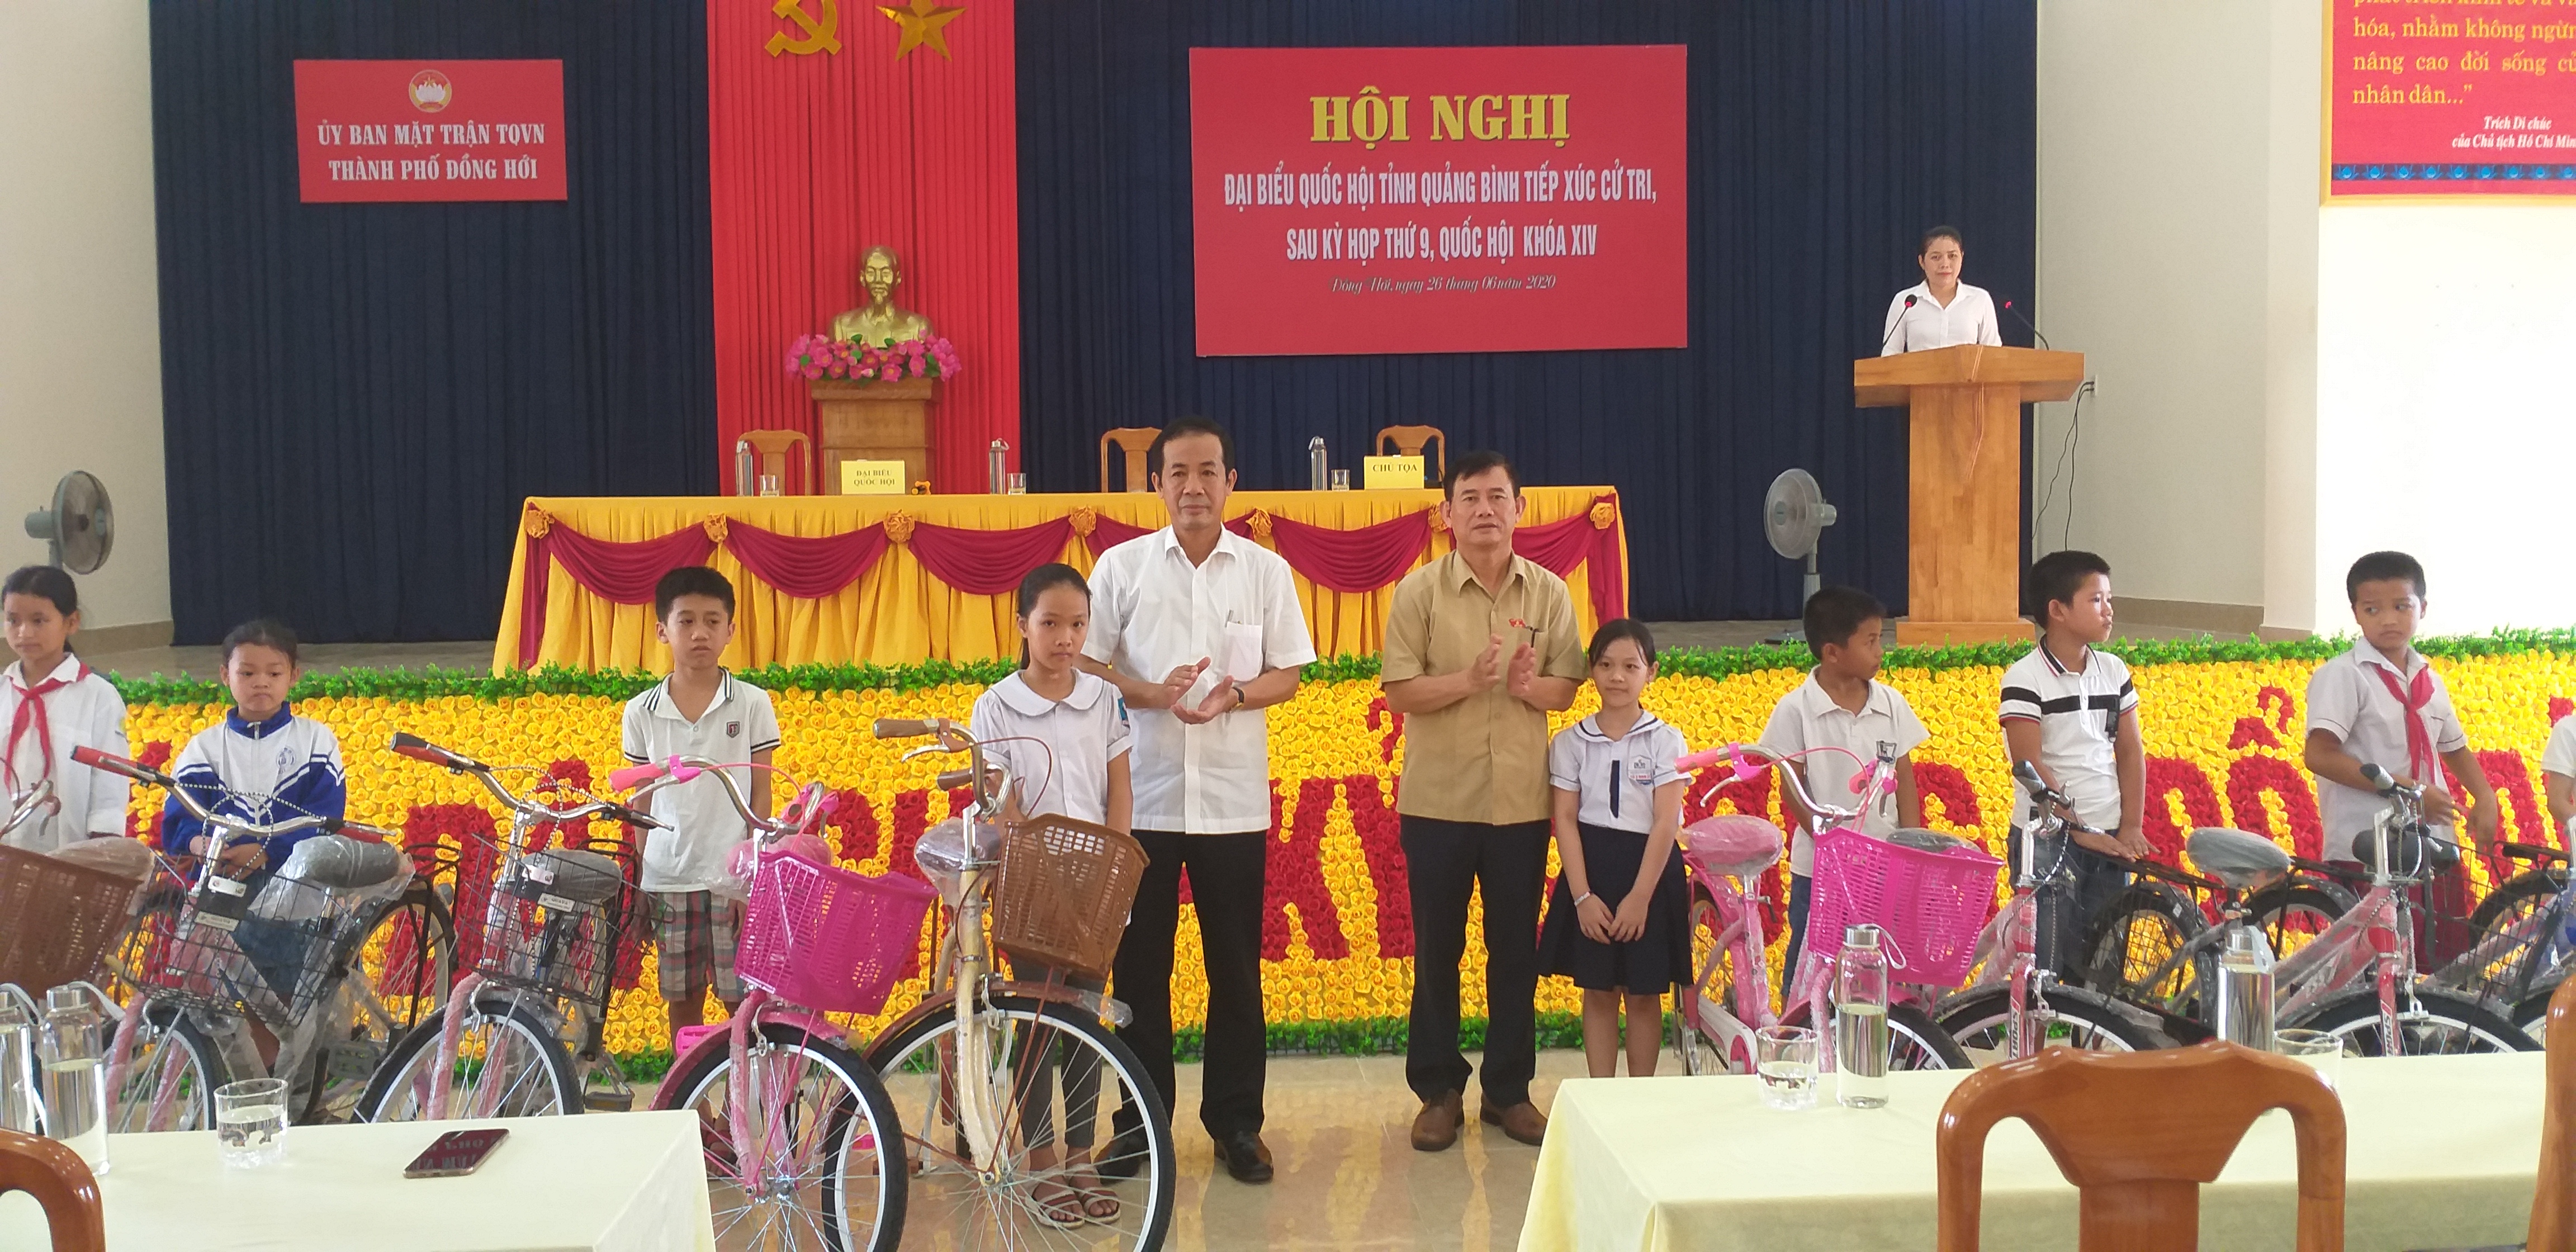 Các đồng chí trong Đoàn ĐBQH tỉnh đã trực tiếp trao tặng 20 chiếc xe đạp cho các em học sinh có hoàn cảnh khó khăn